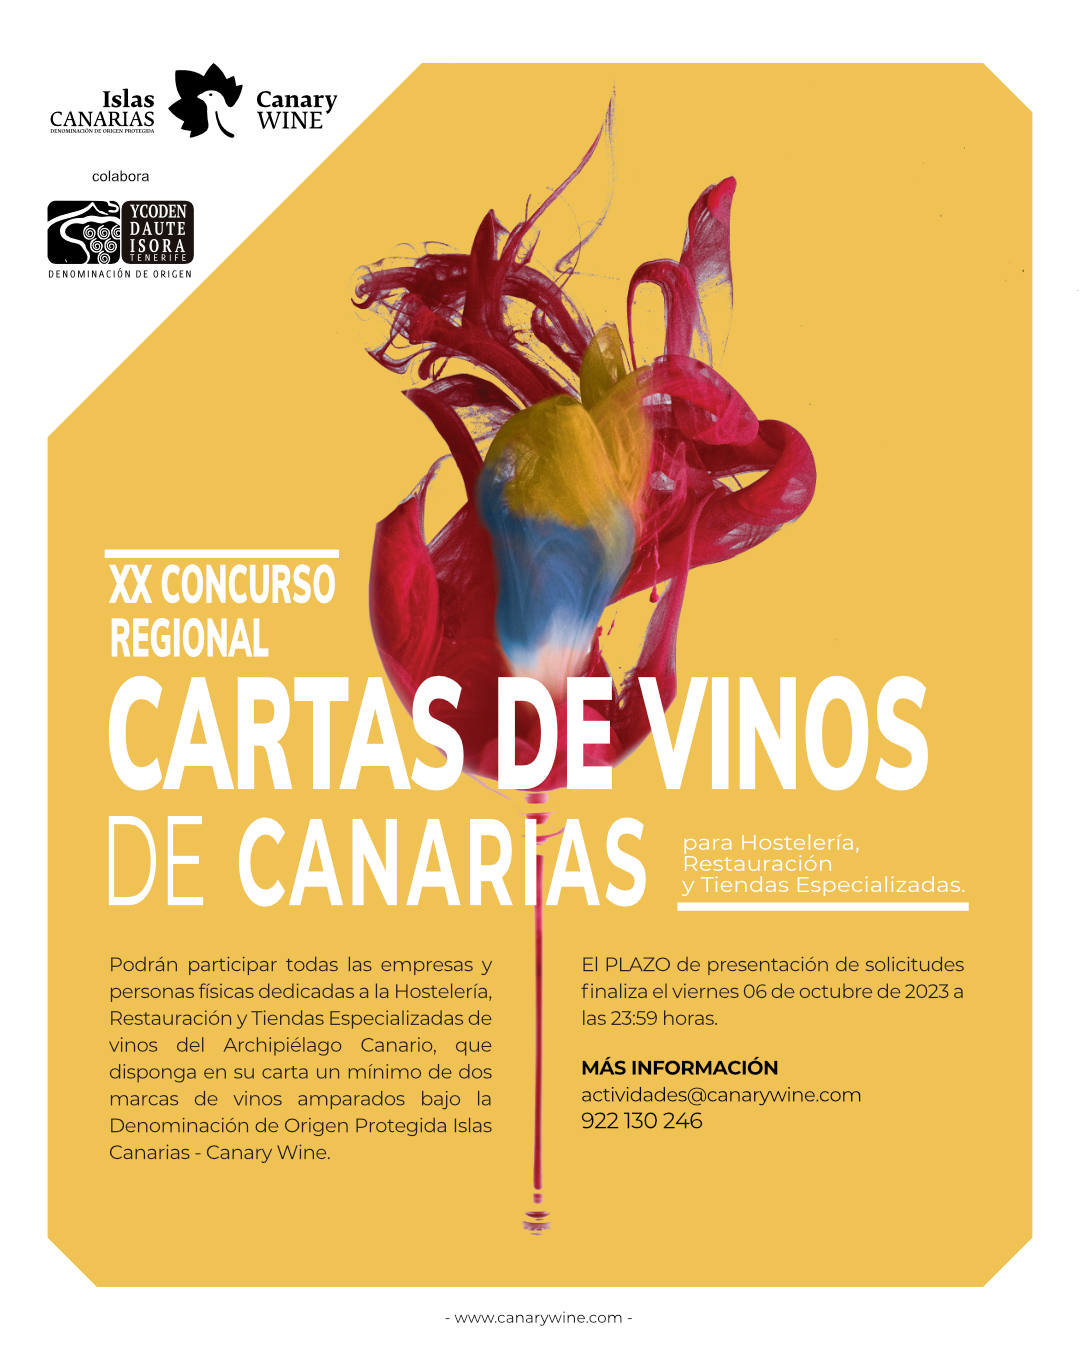 Convocado el XX Concurso Regional de “Cartas de Vinos de Canarias” para Hostelería, Restauración y Tiendas Especializadas